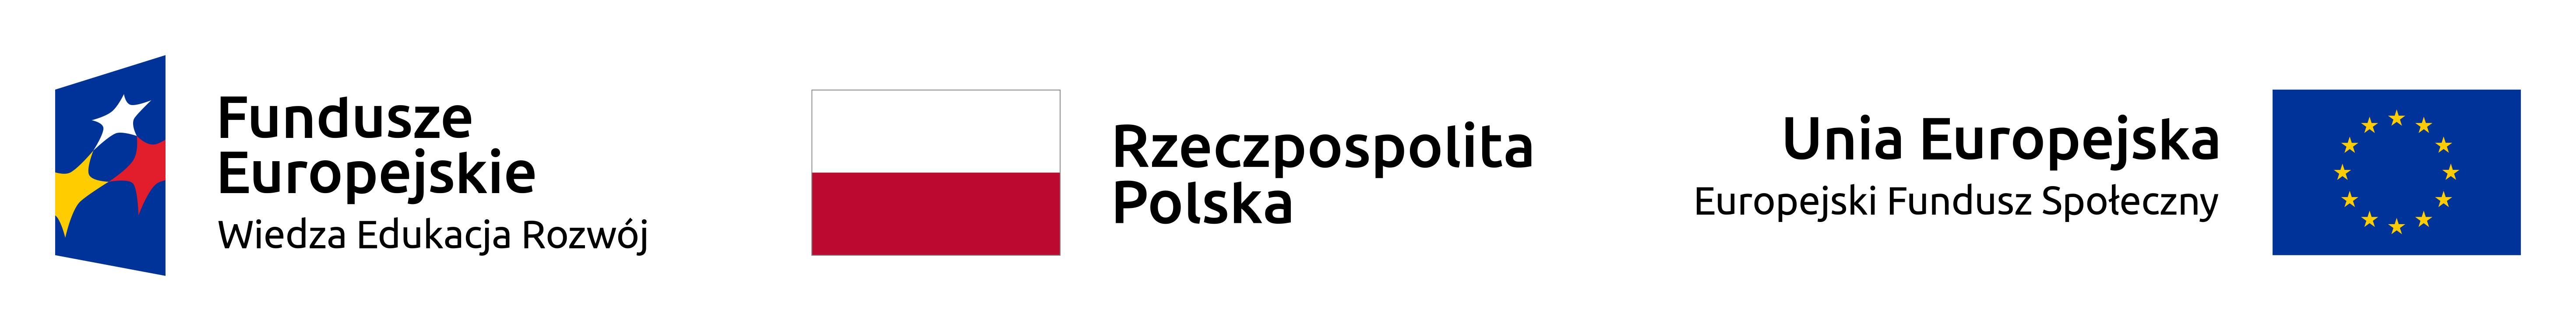 Loga programu POWER, flaga Funduszy europejskich, flaga RZeczpospolitej Polskiej, flaga Unii Europejskiej 